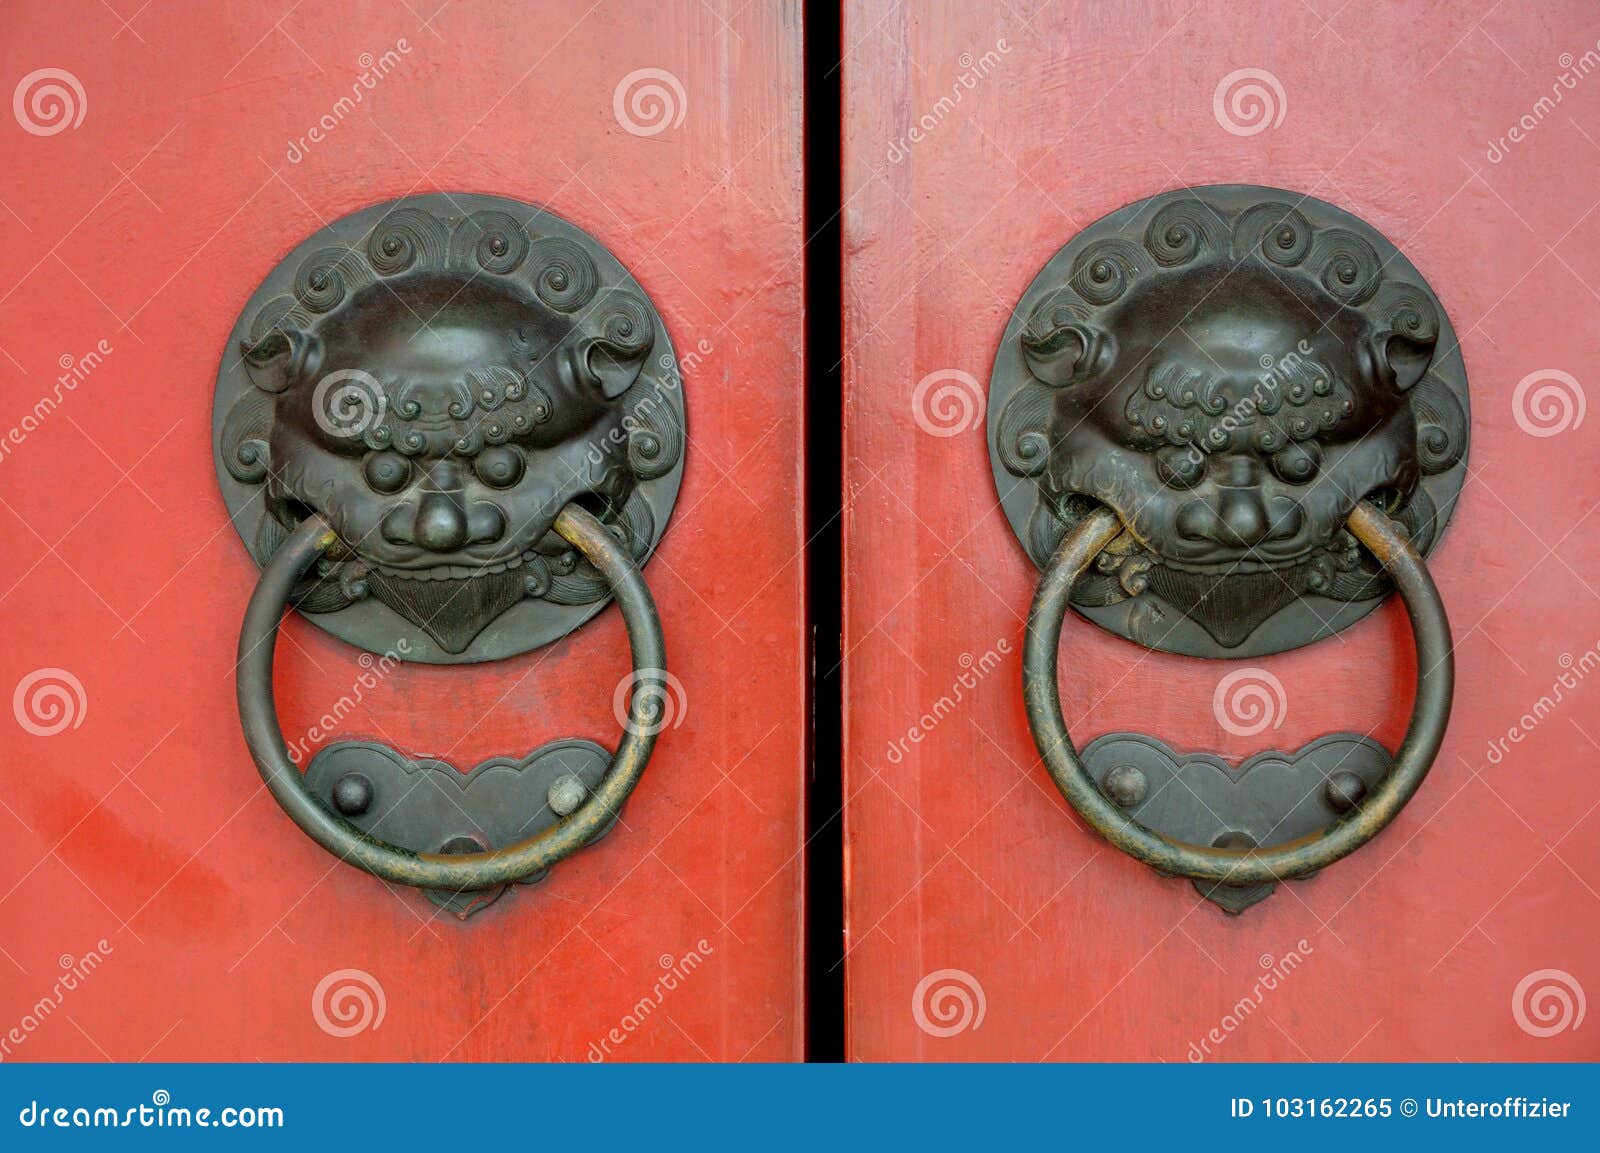 ancient oriental door knockers